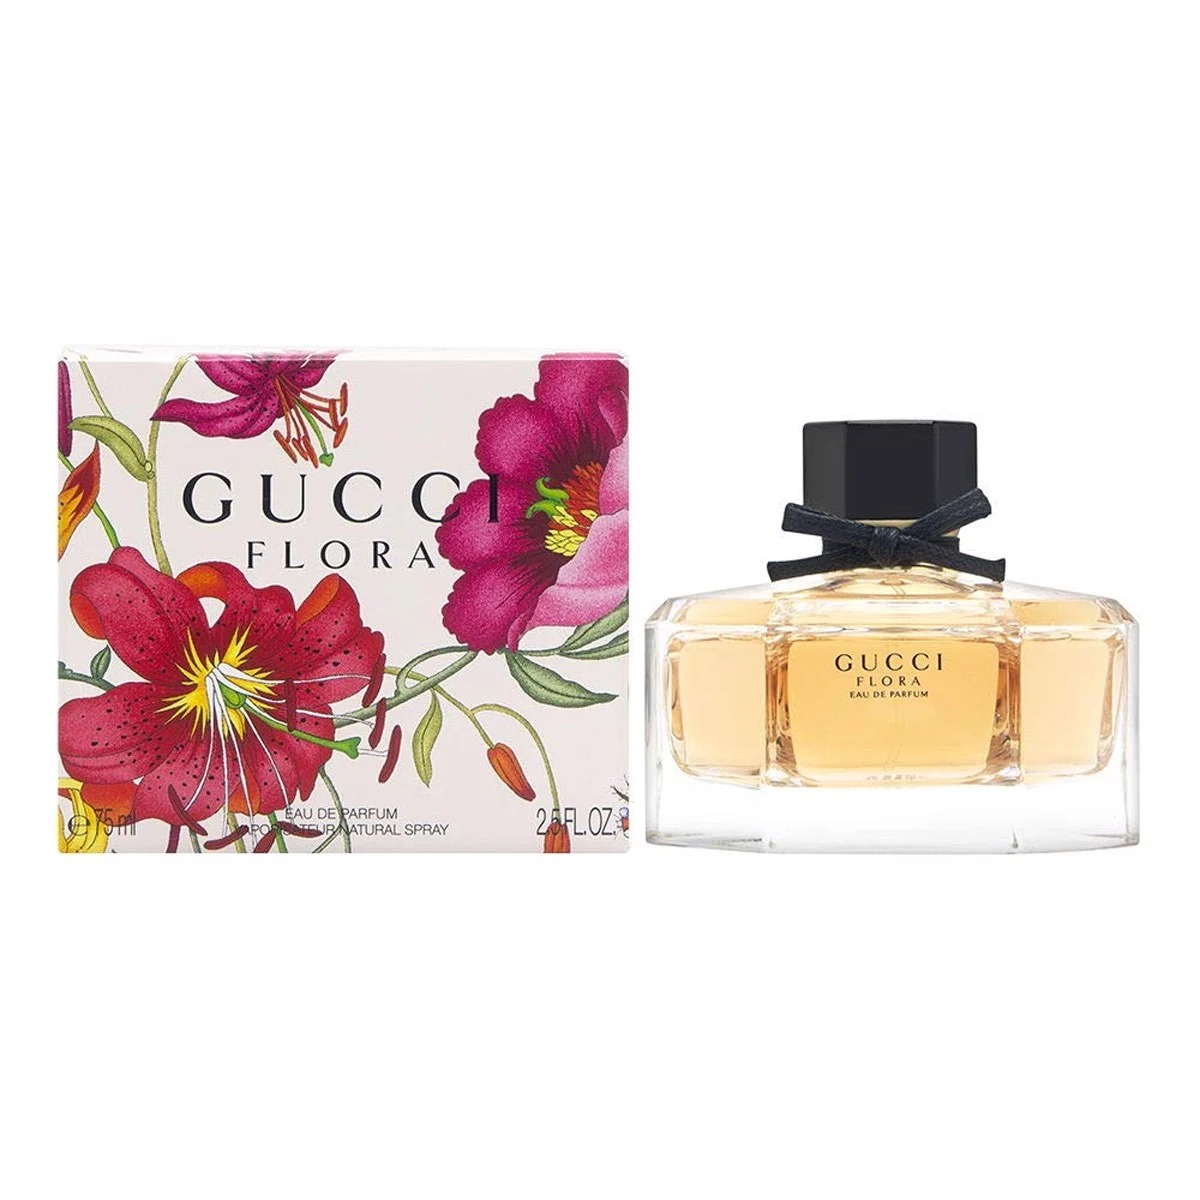 Gucci Flora by Gucci Eau De Parfum 1